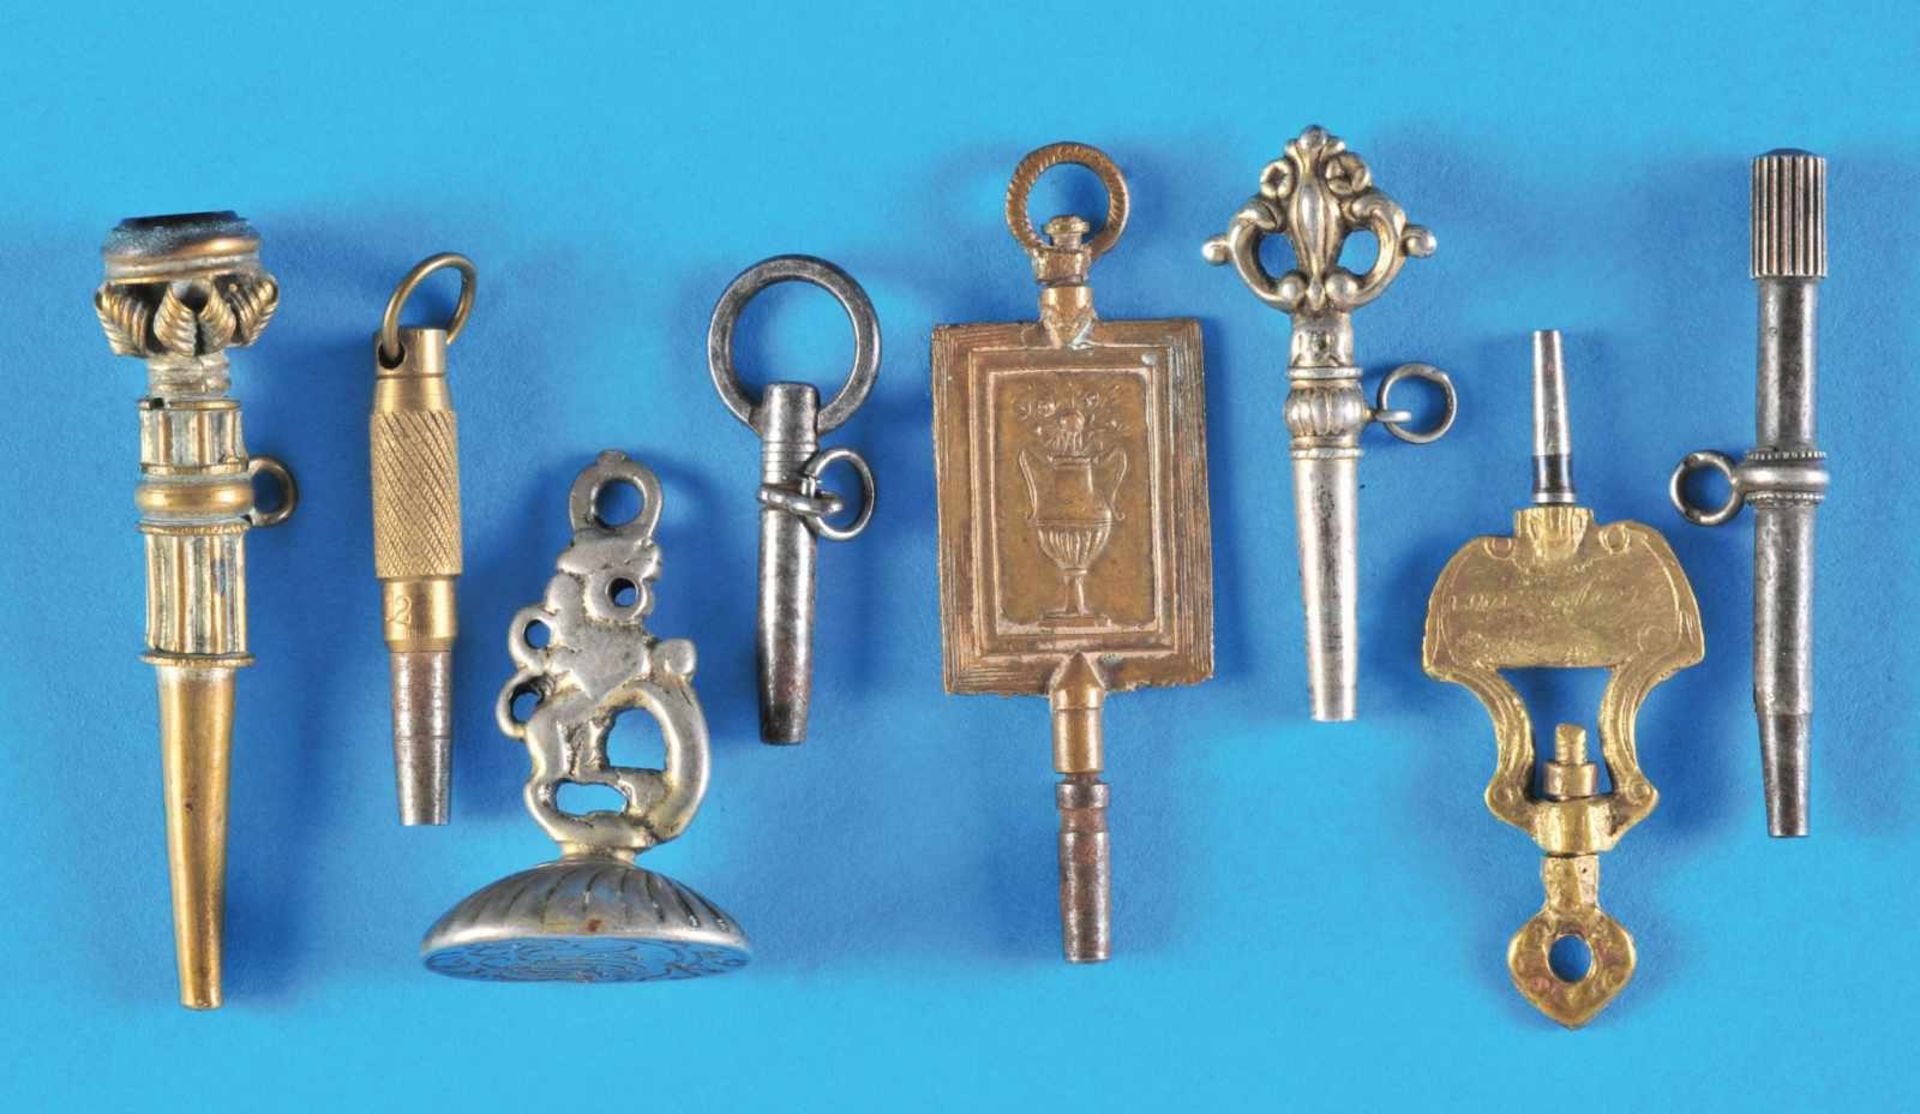 Bundle wit 7 old pocket watch keys and 1 signetKonvolut mit 7 alten Taschenuhrschlüsseln und 1